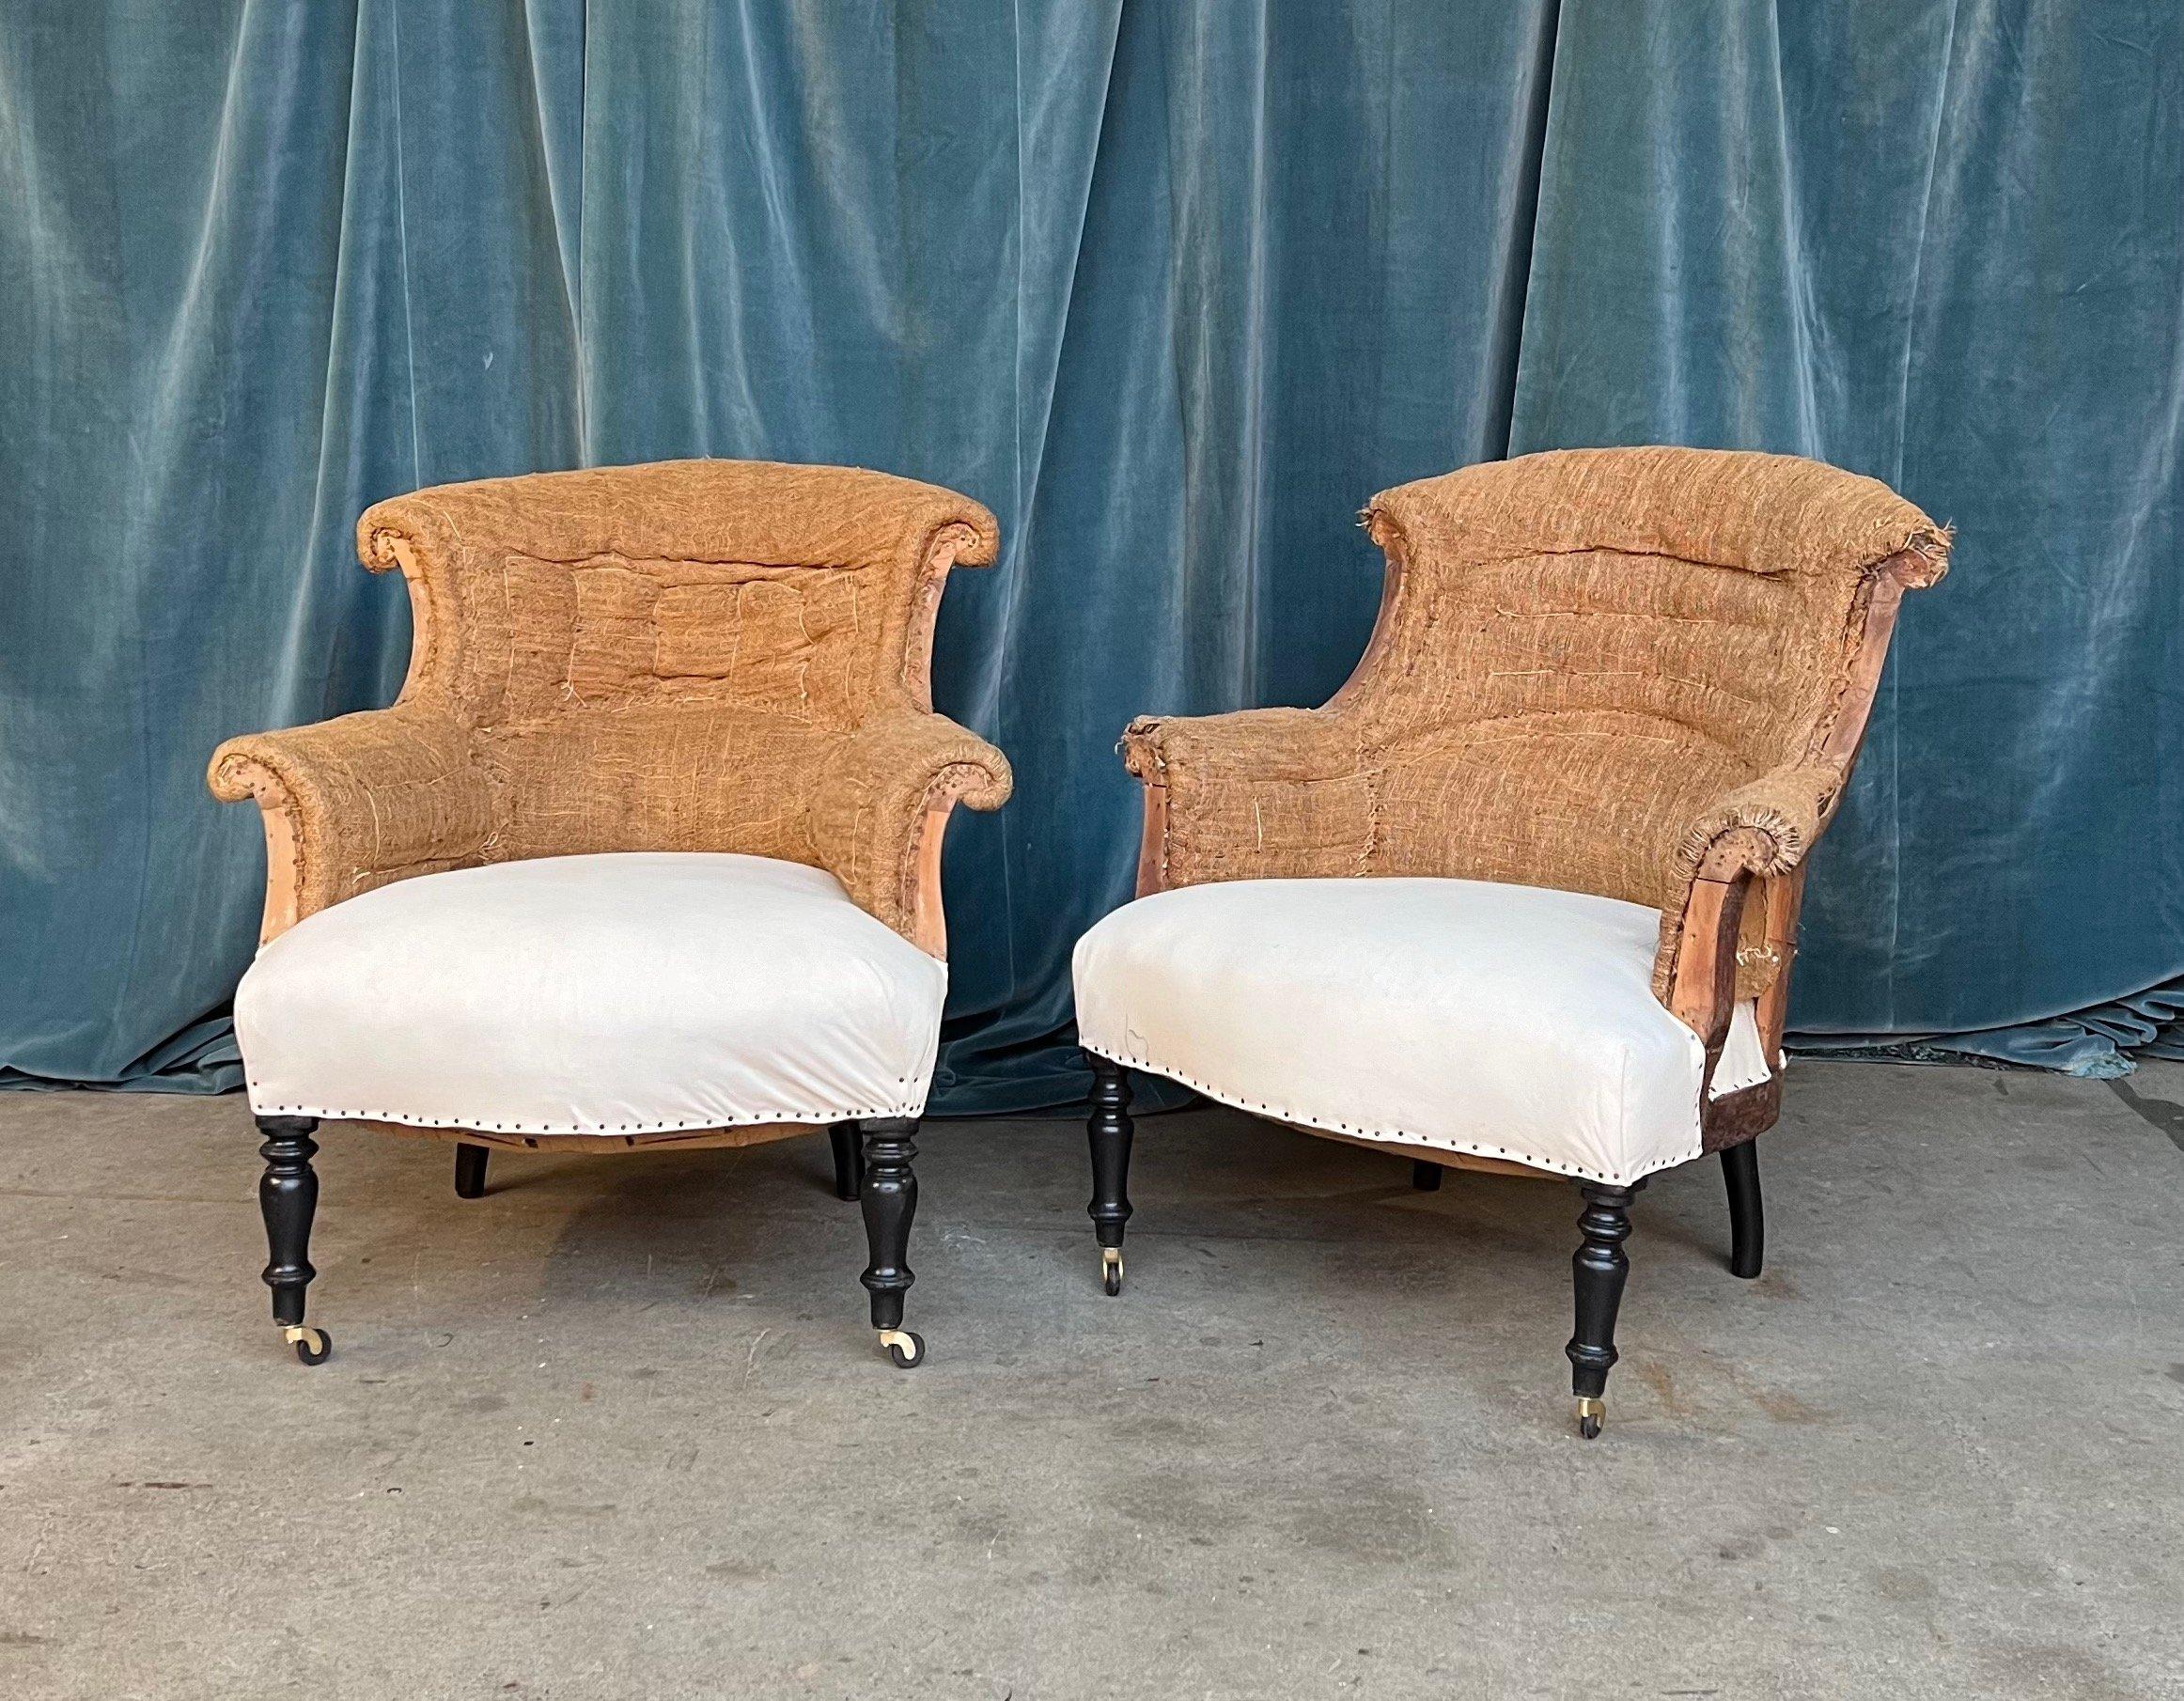 Une paire classique de fauteuils Napoléon III français avec des accoudoirs et un dossier à volutes. Les chaises ont été déshabillées jusqu'à la toile de jute et la mousseline et sont prêtes à être tapissées. Nous avons ajouté des roulettes aux pieds